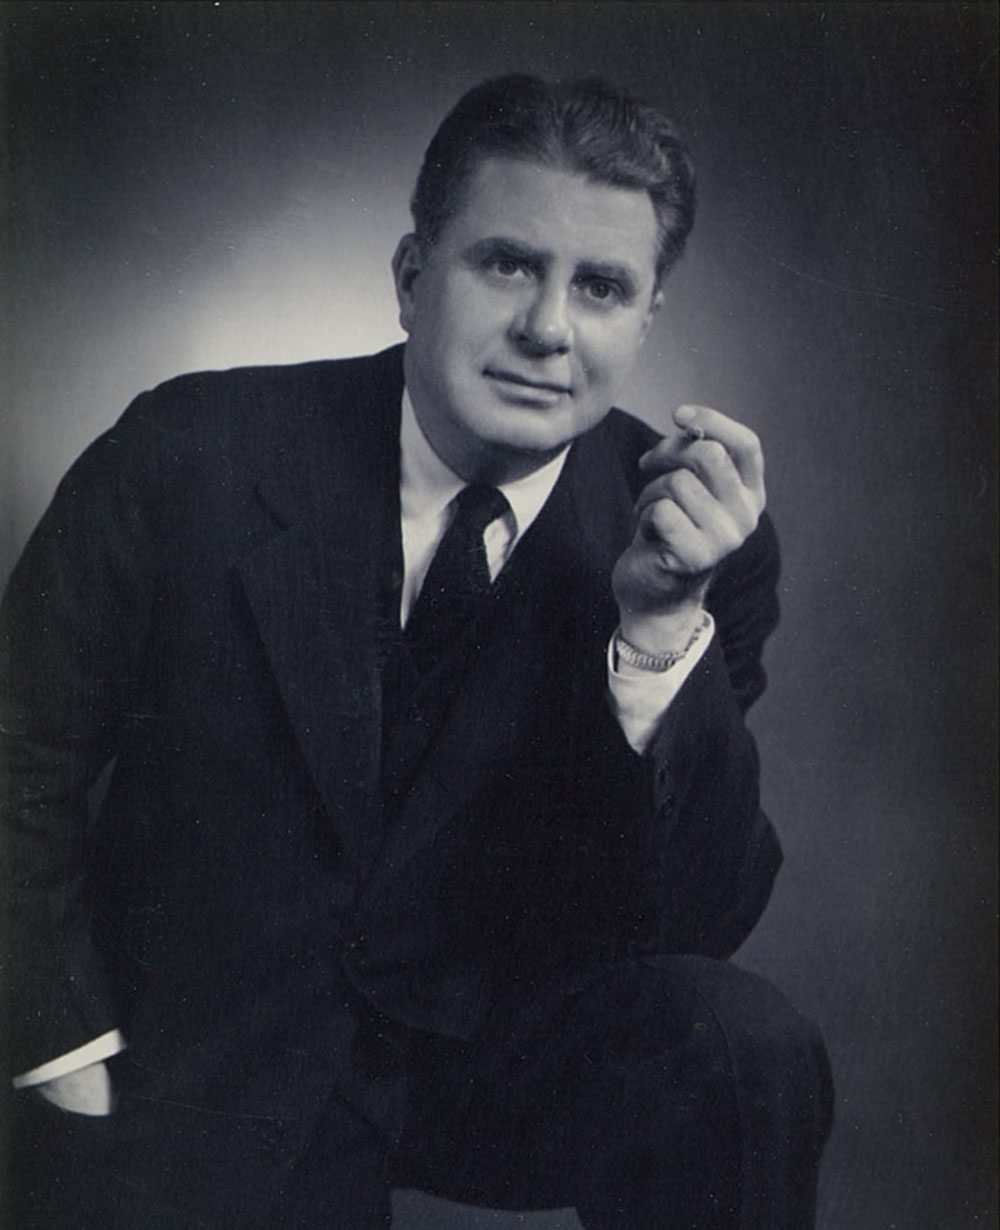 Milton Fairman, PRSA President of 1951